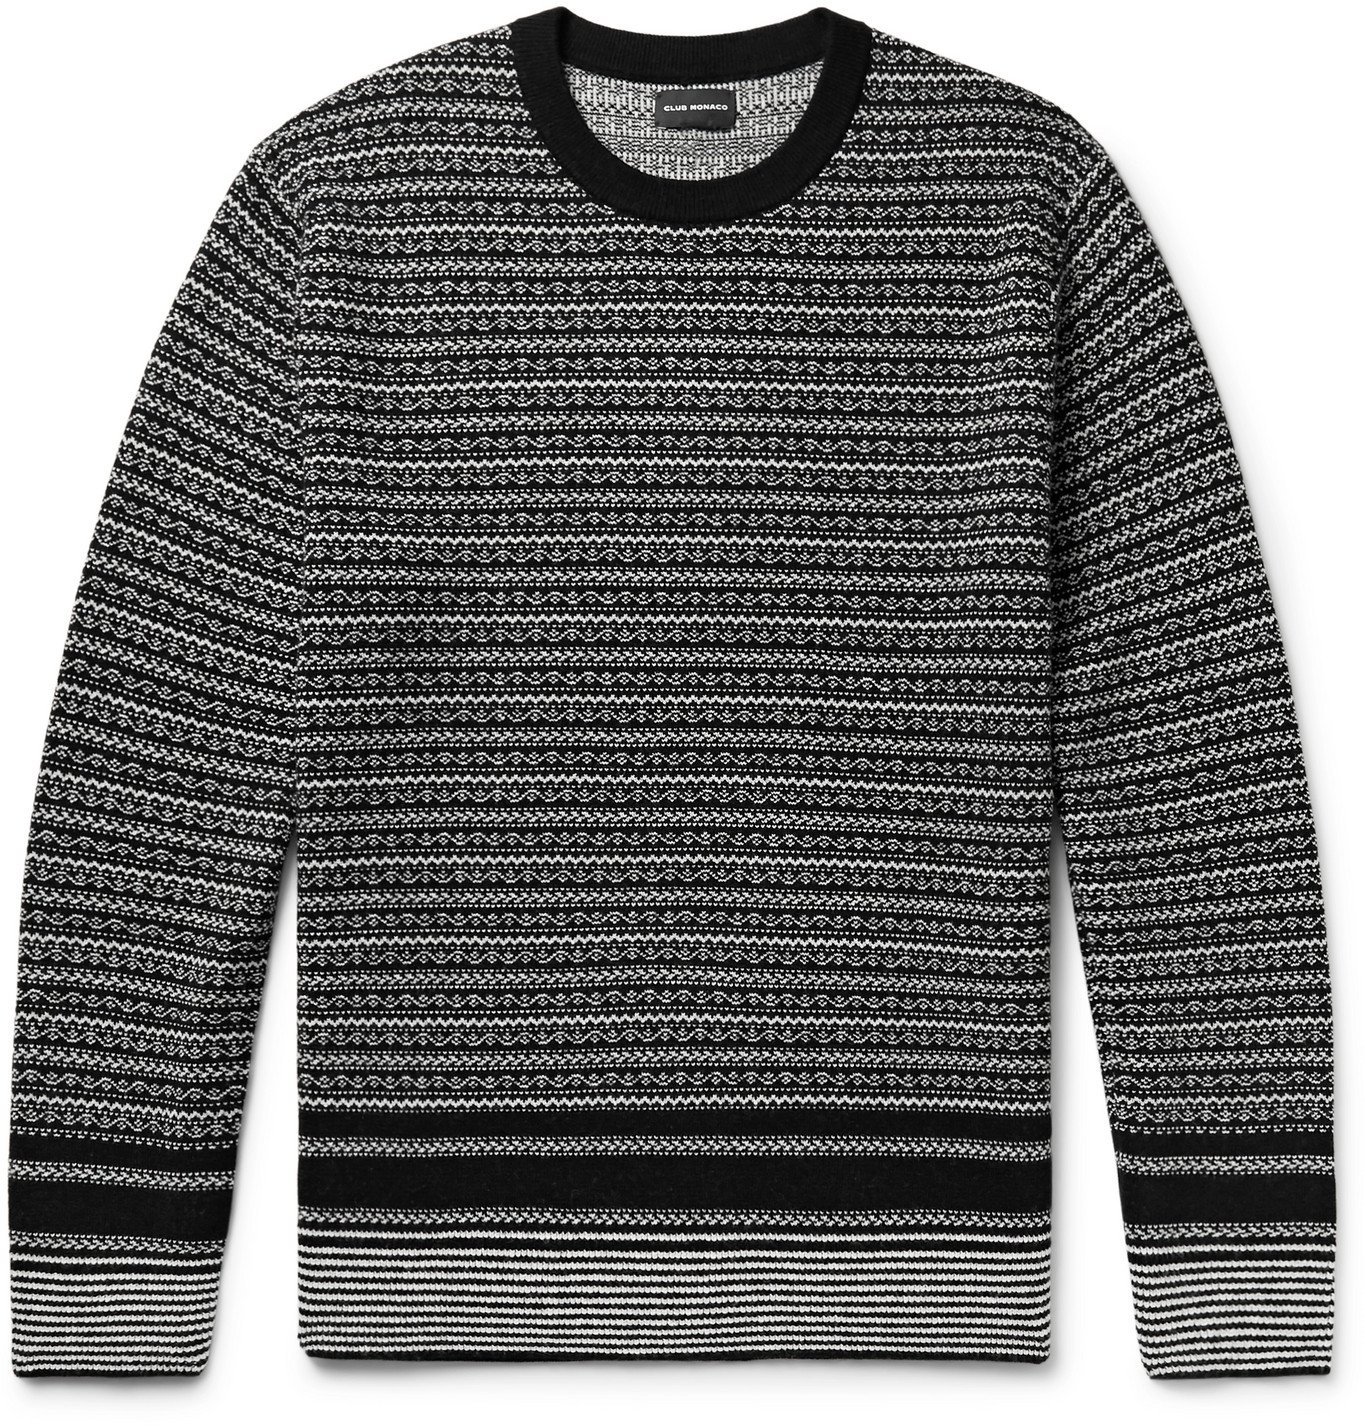 CLUB MONACO - Fair Isle Jacquard-Knit Sweater - Black Club Monaco